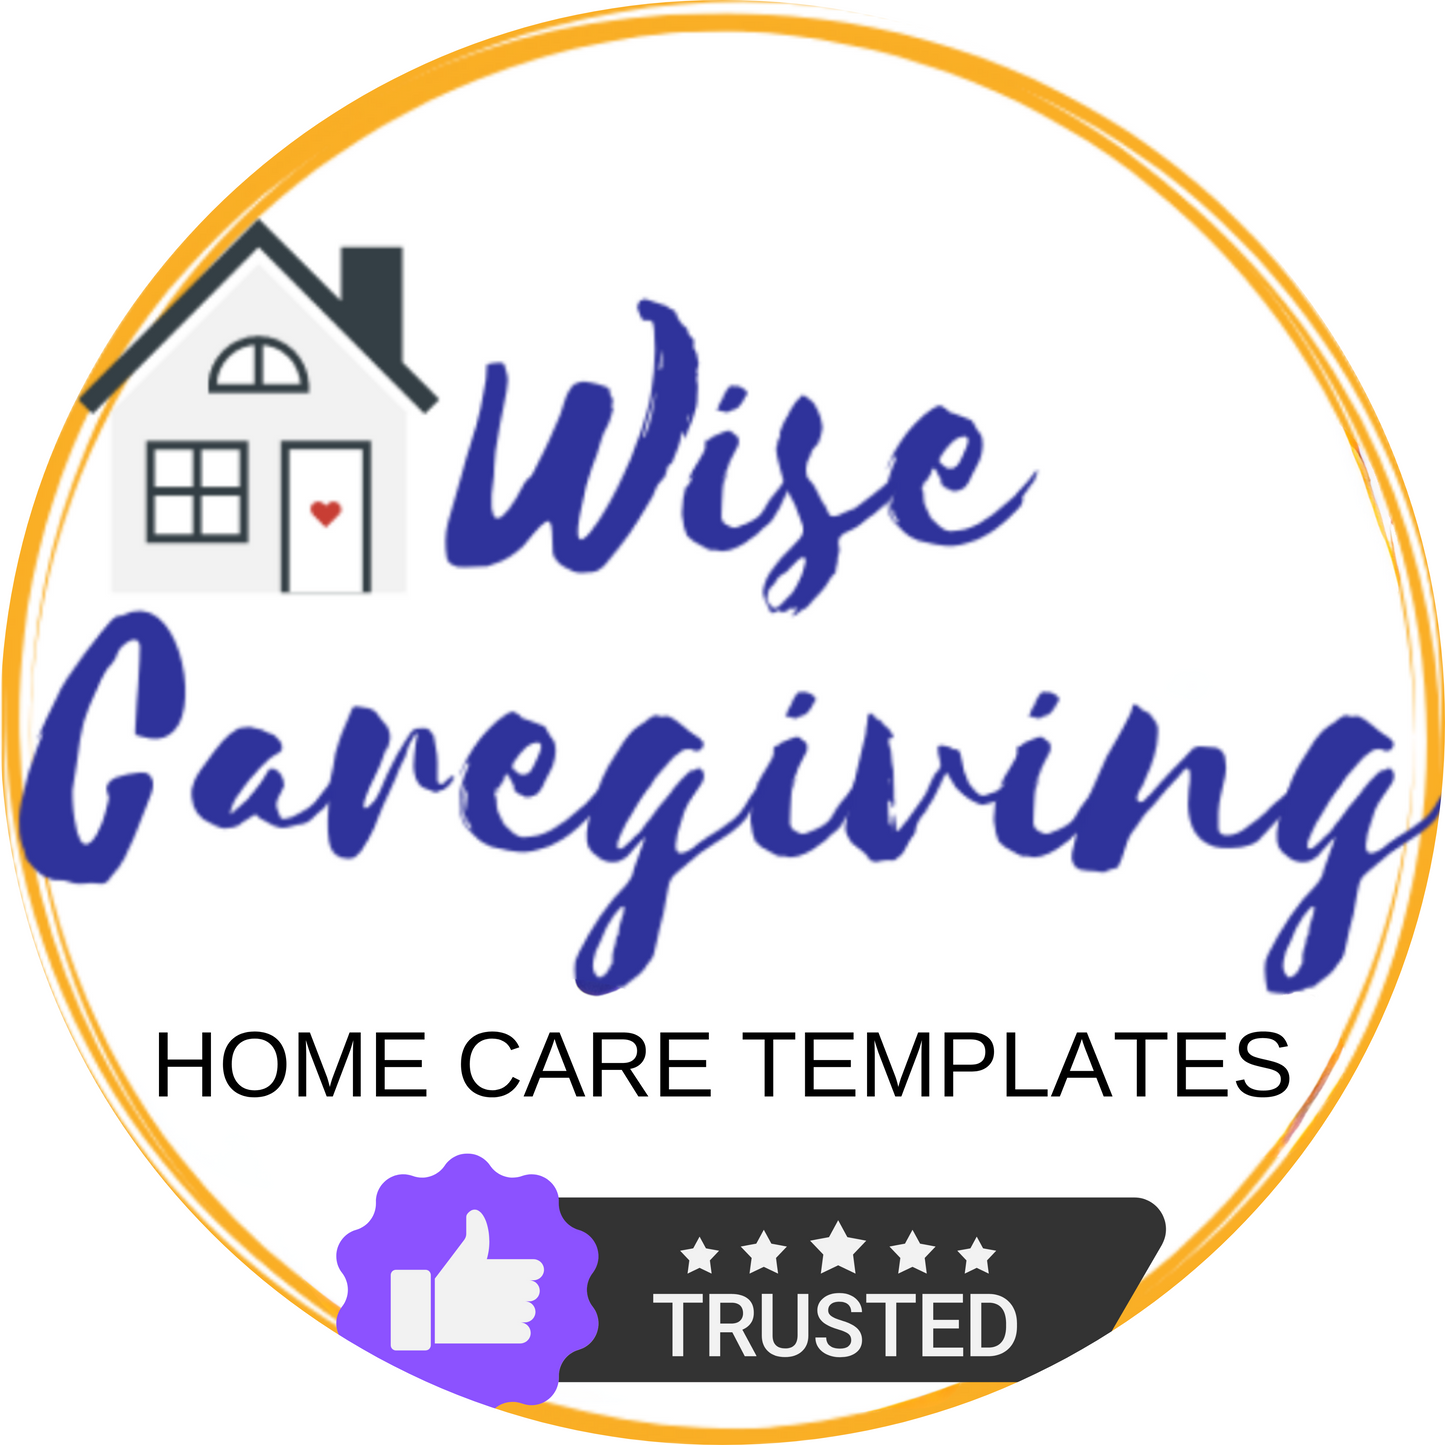 Caregiving Templates